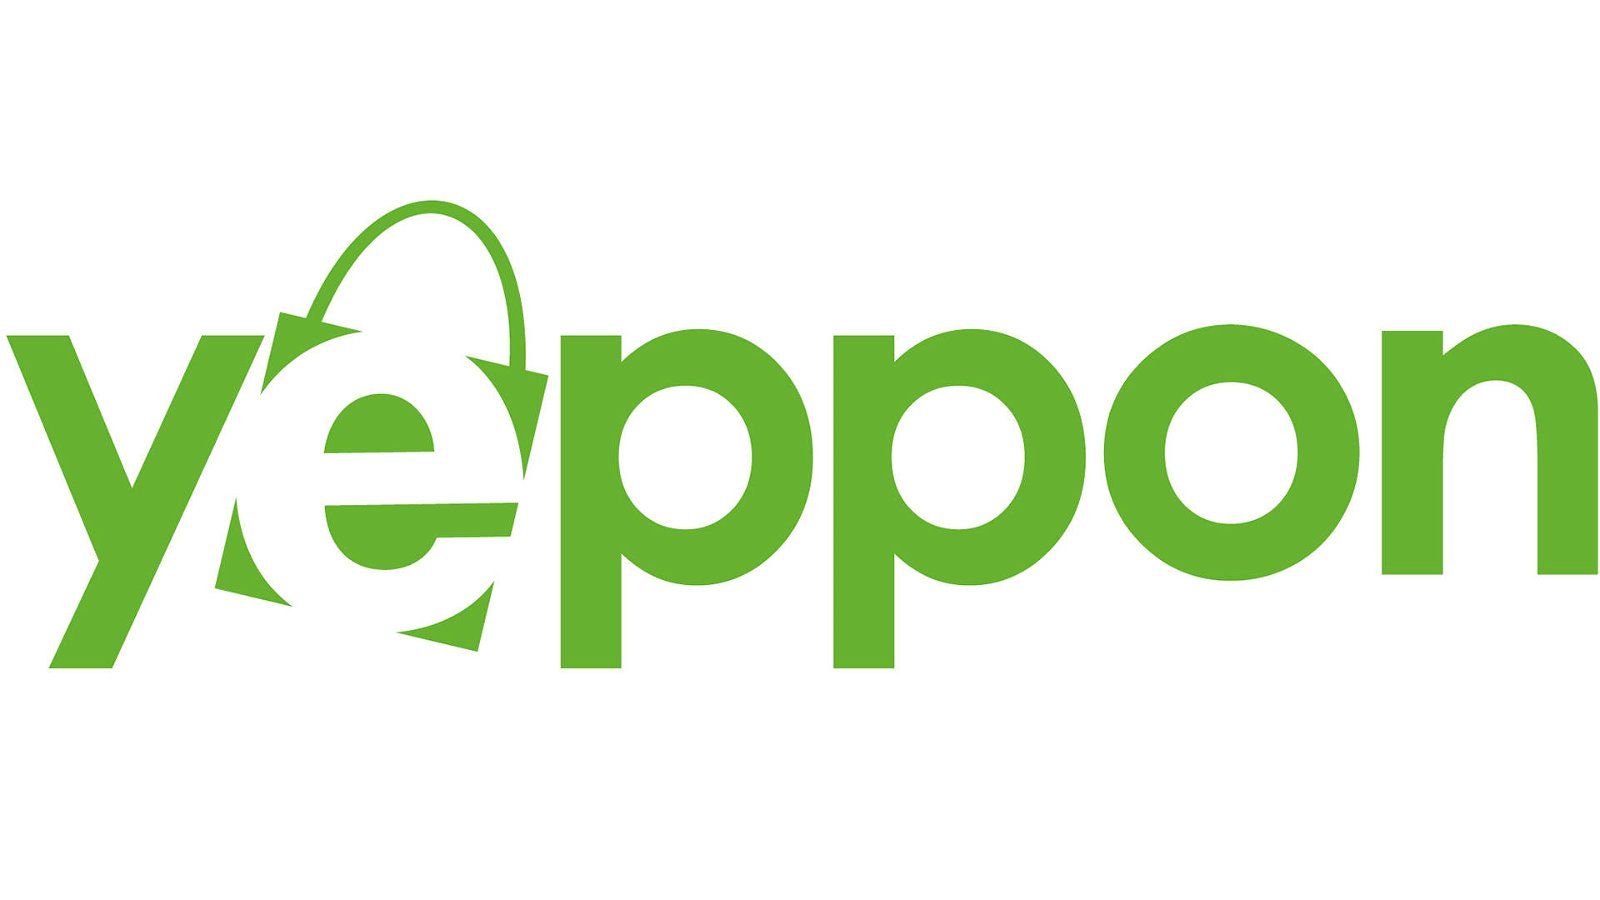 Immagine di Yeppon Club, la prima piattaforma al mondo di e-commerce con cashback integrato